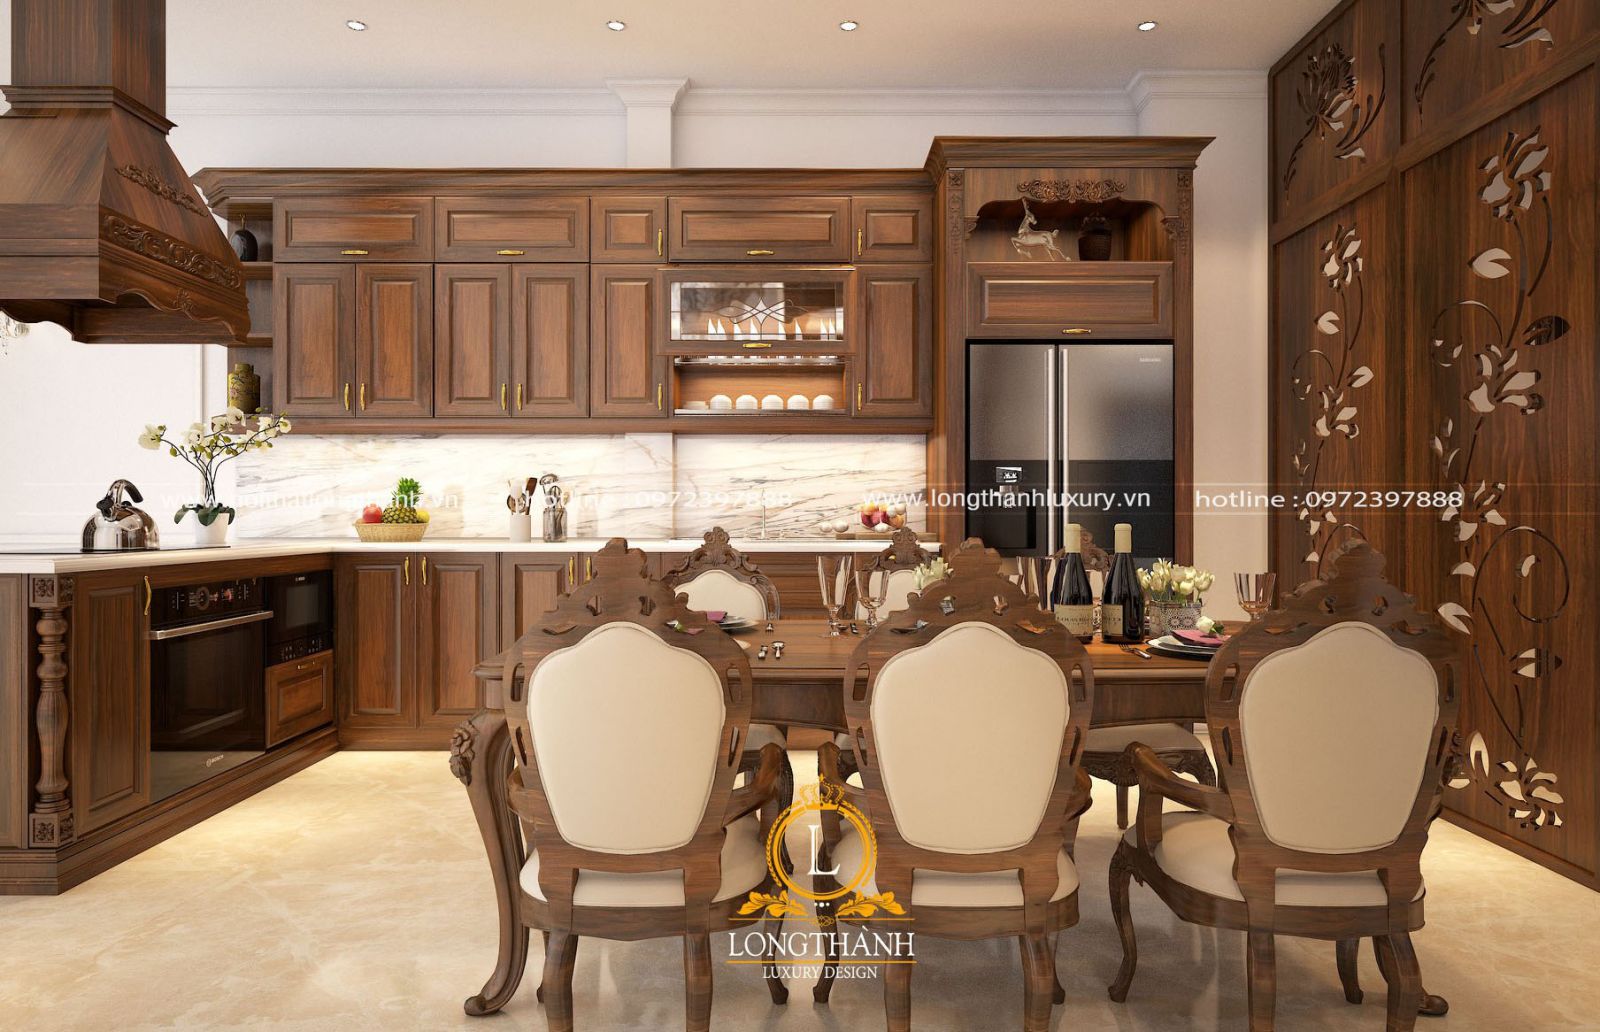 Tủ bếp được thiết kế theo phong cách tân cổ điển